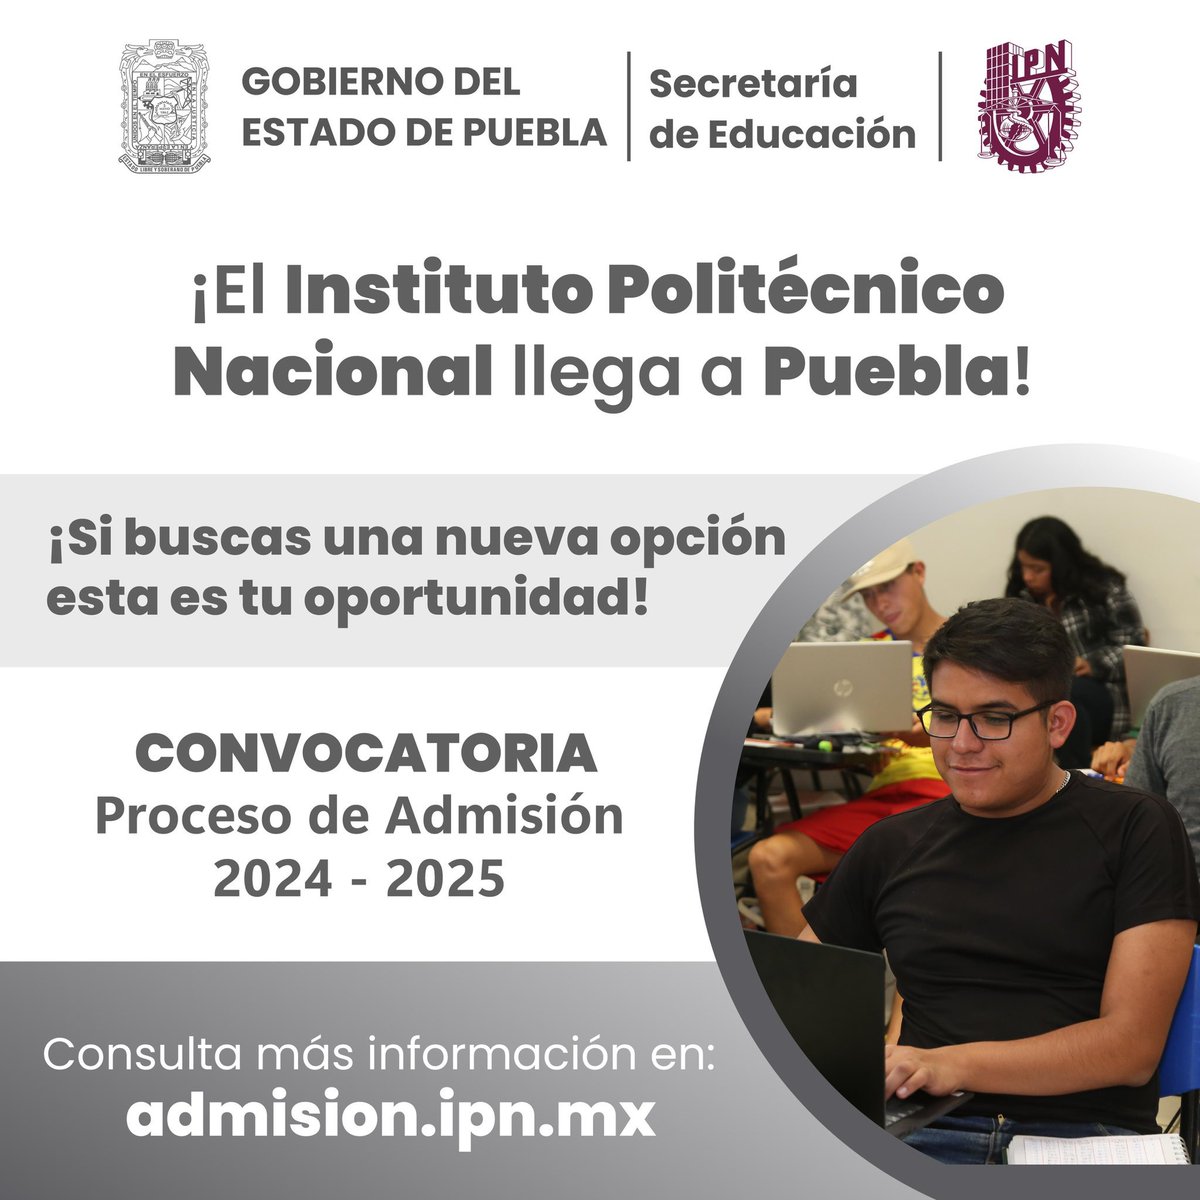 ¿Quieres estudiar en el @IPN_MX en #Puebla ⚙️🇲🇽? Ya está abierta la convocatoria desde hoy y hasta el 26 de agosto, informó el gobernador Sergio Salomón Céspedes (@SergioSalomonC). 🔗 NIVEL SUPERIOR: admision.ipn.mx/ps/convocatori… 🔗 NIVEL MEDIO SUPERIOR: admision.ipn.mx/pm/convocatori…